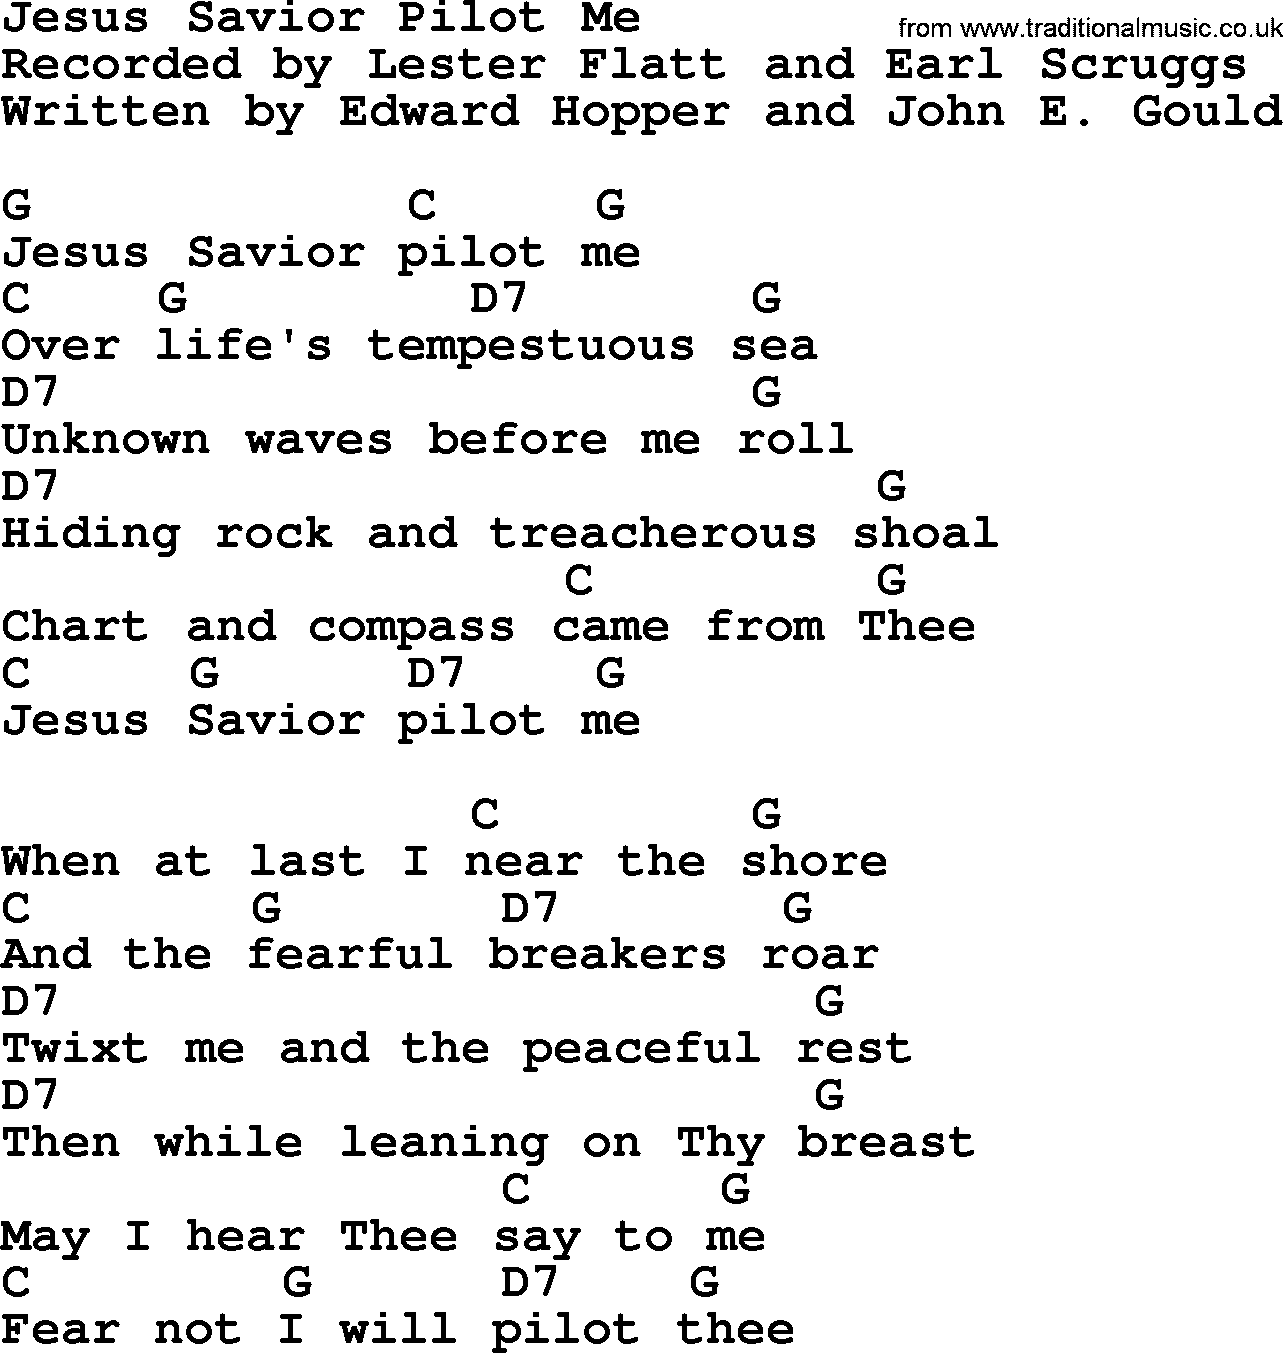 Bluegrass song: Jesus Savior Pilot Me, lyrics and chords